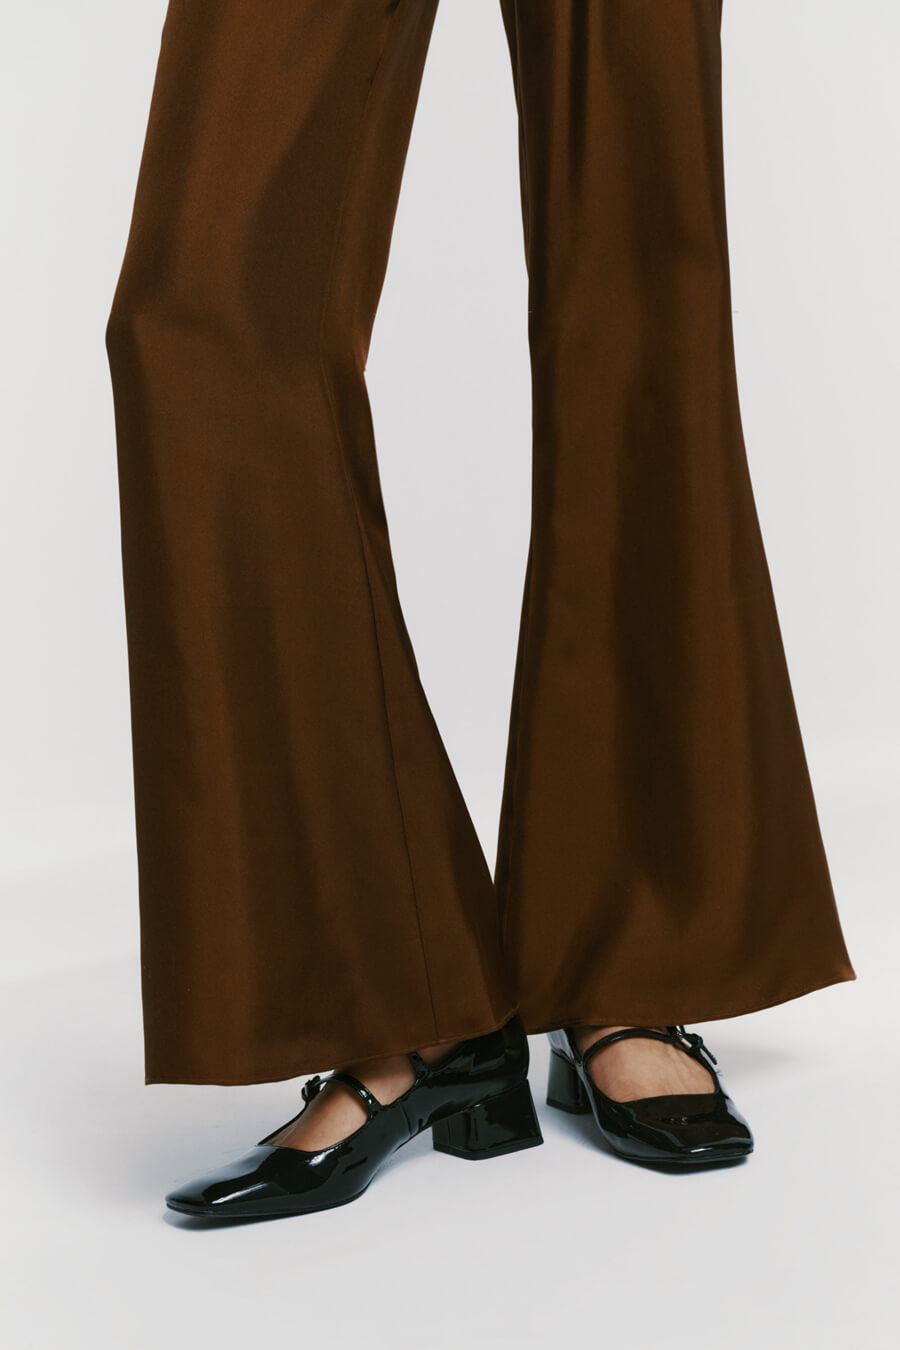 Silk pants in brown